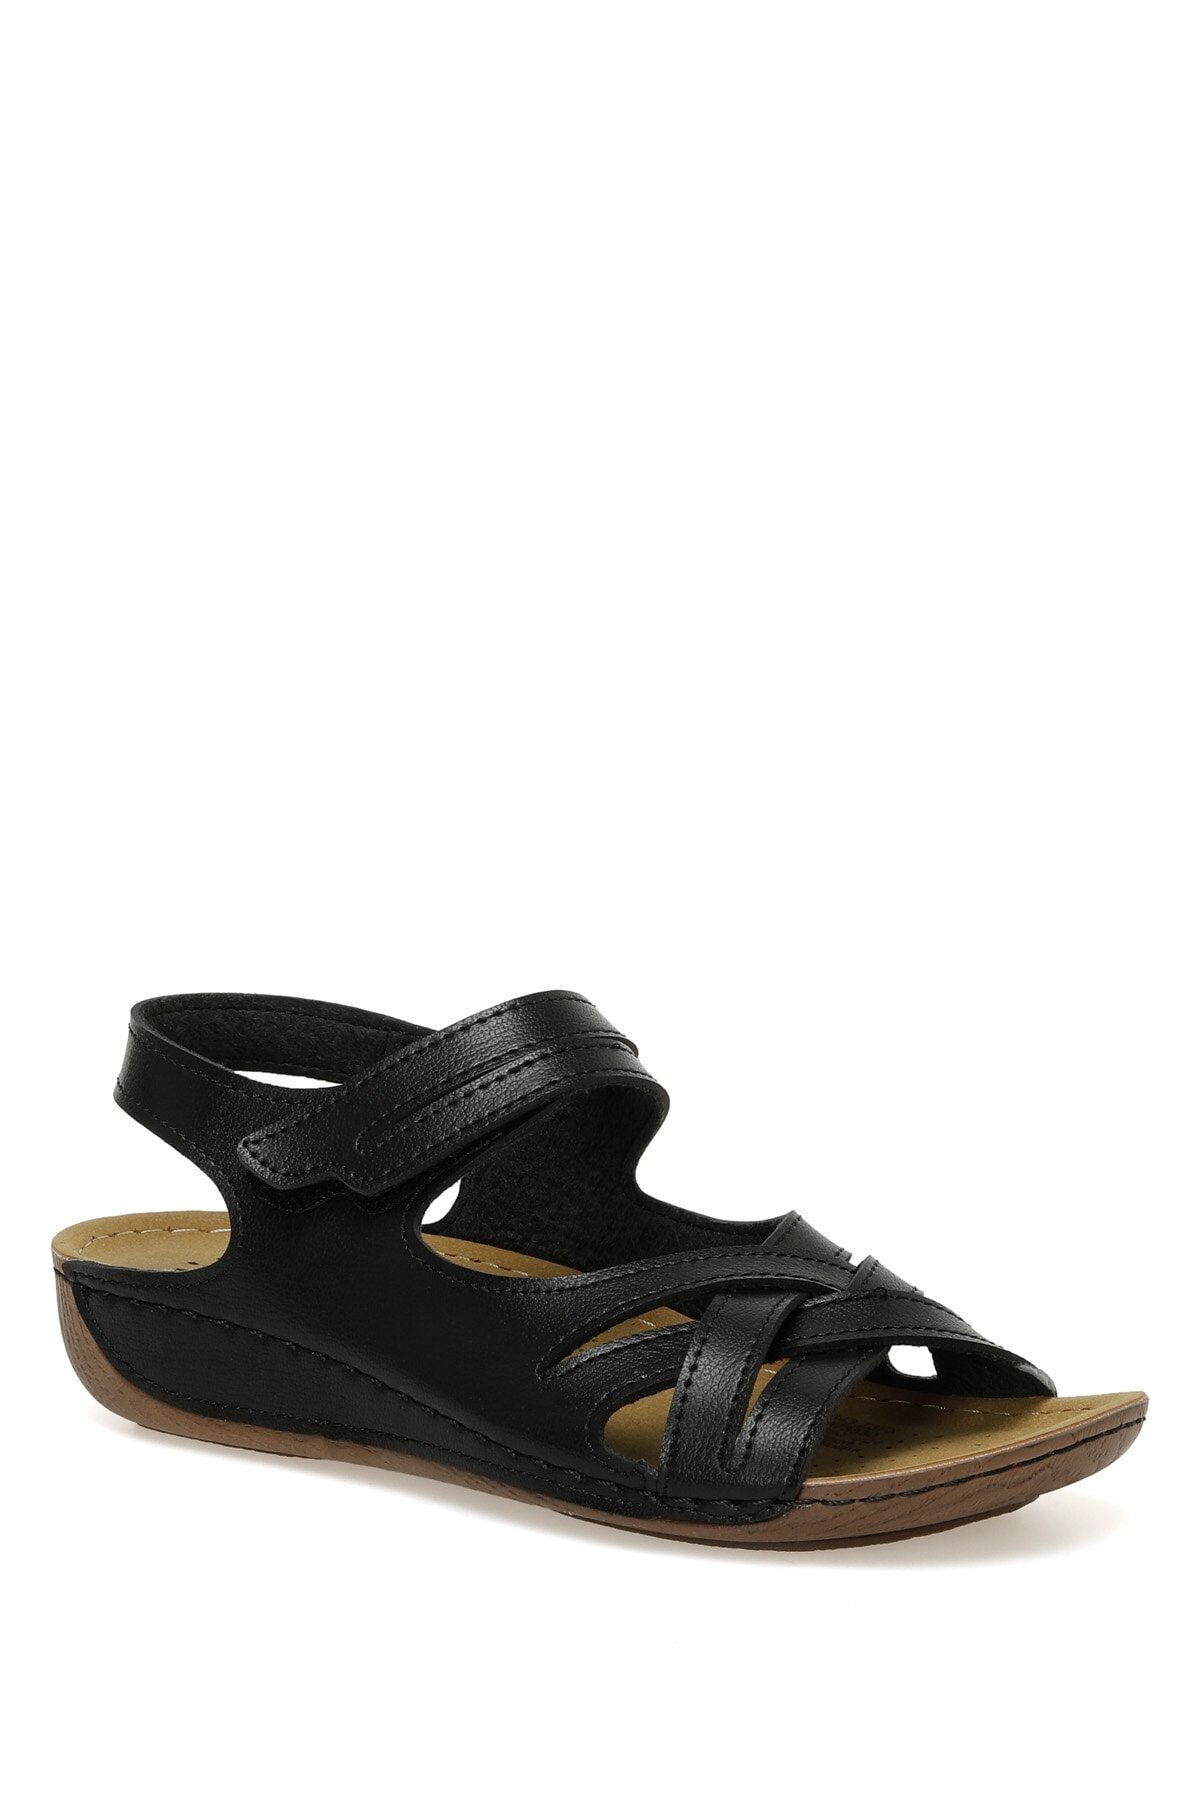 Polaris 164343.z3fx Siyah Kadın Comfort Sandalet